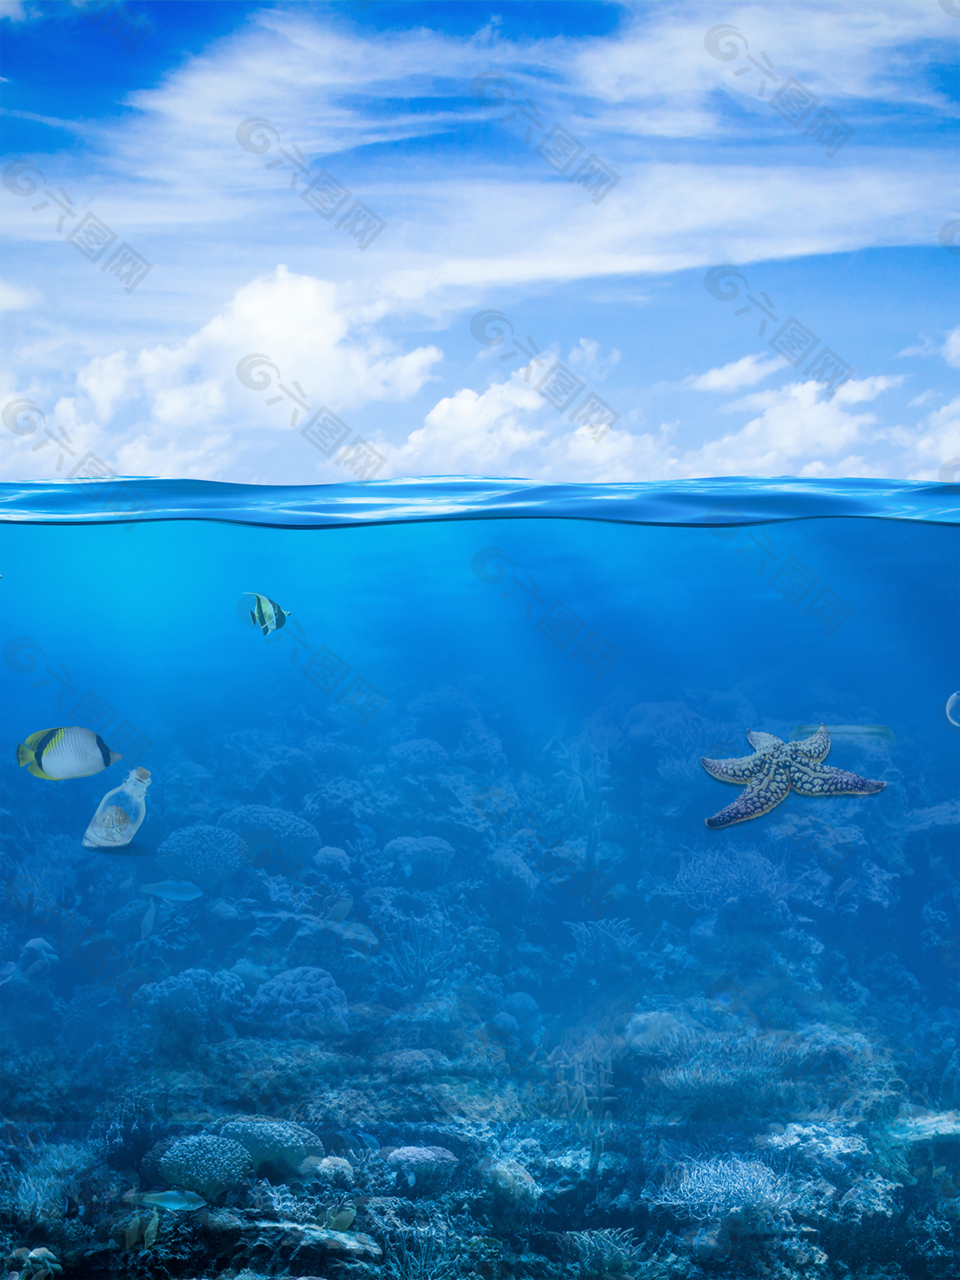 蓝天白云风景海水海面鱼类动物背景